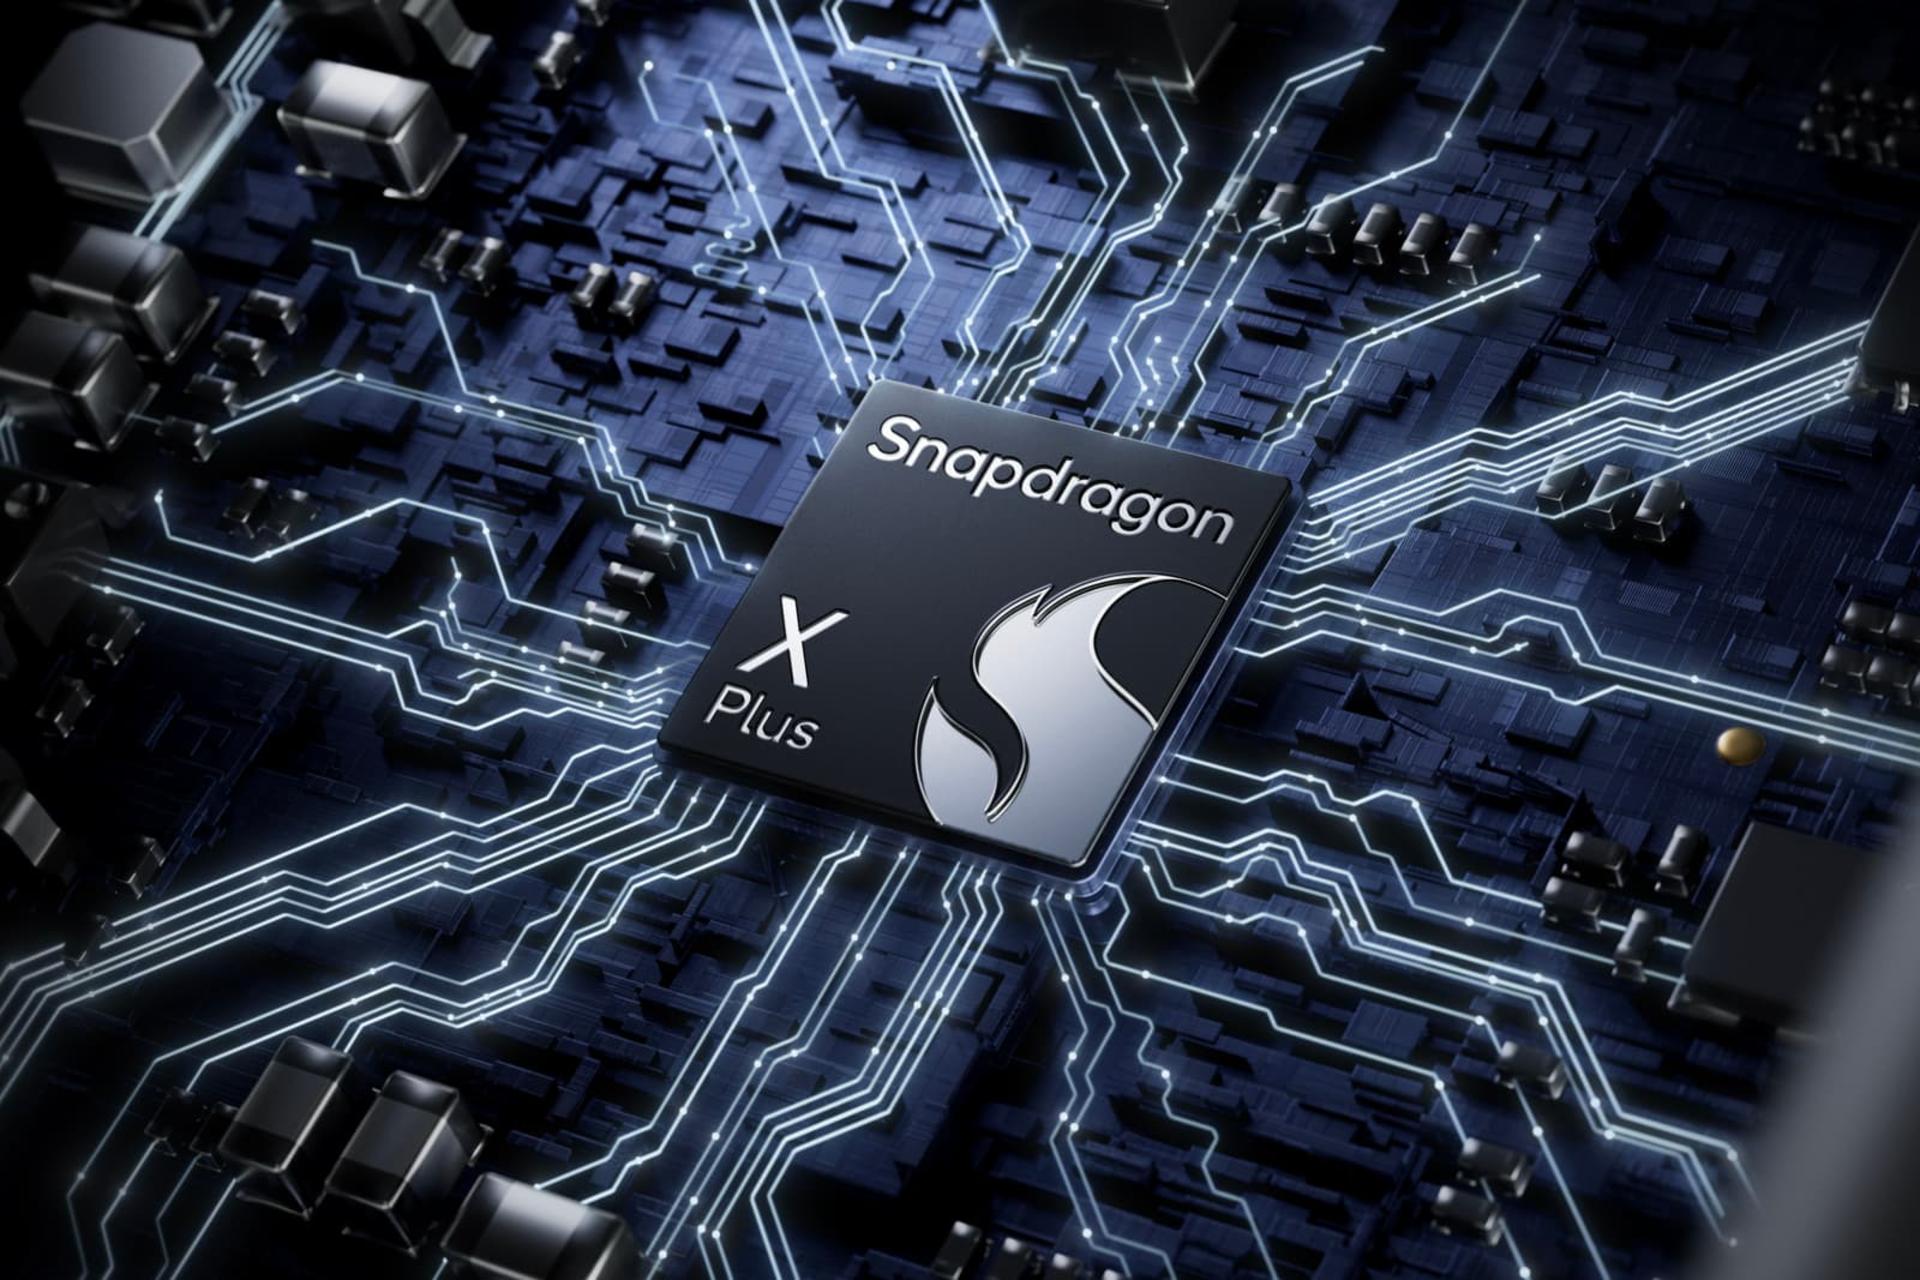 مرجع متخصصين ايران پردازنده اسنپدراگون ايكس پلاس / Snapdragon X Plus روي مادربرد